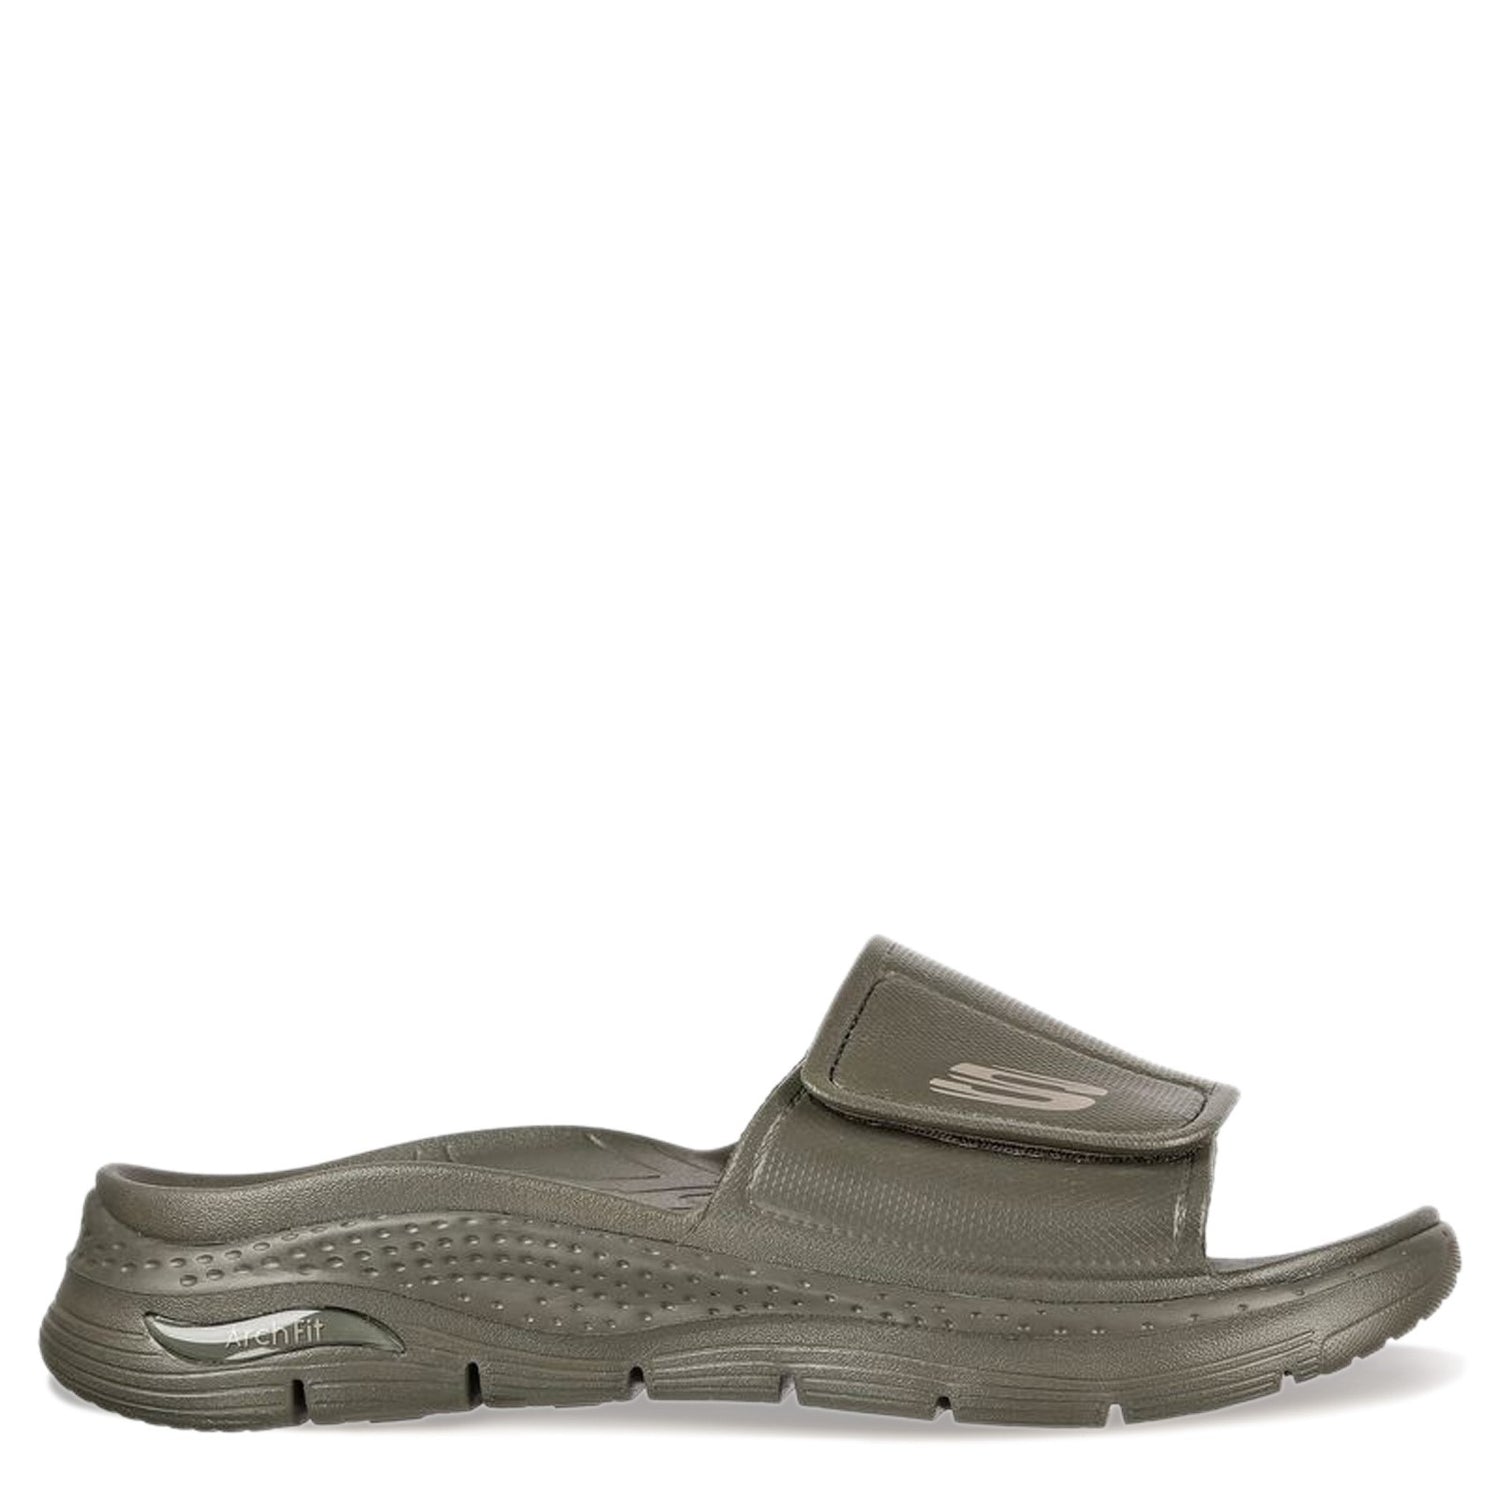 Peltz Shoes  Men's Skechers Foamies: Arch Fit - Feelin Fresh Sandal Olive 243159-OLV